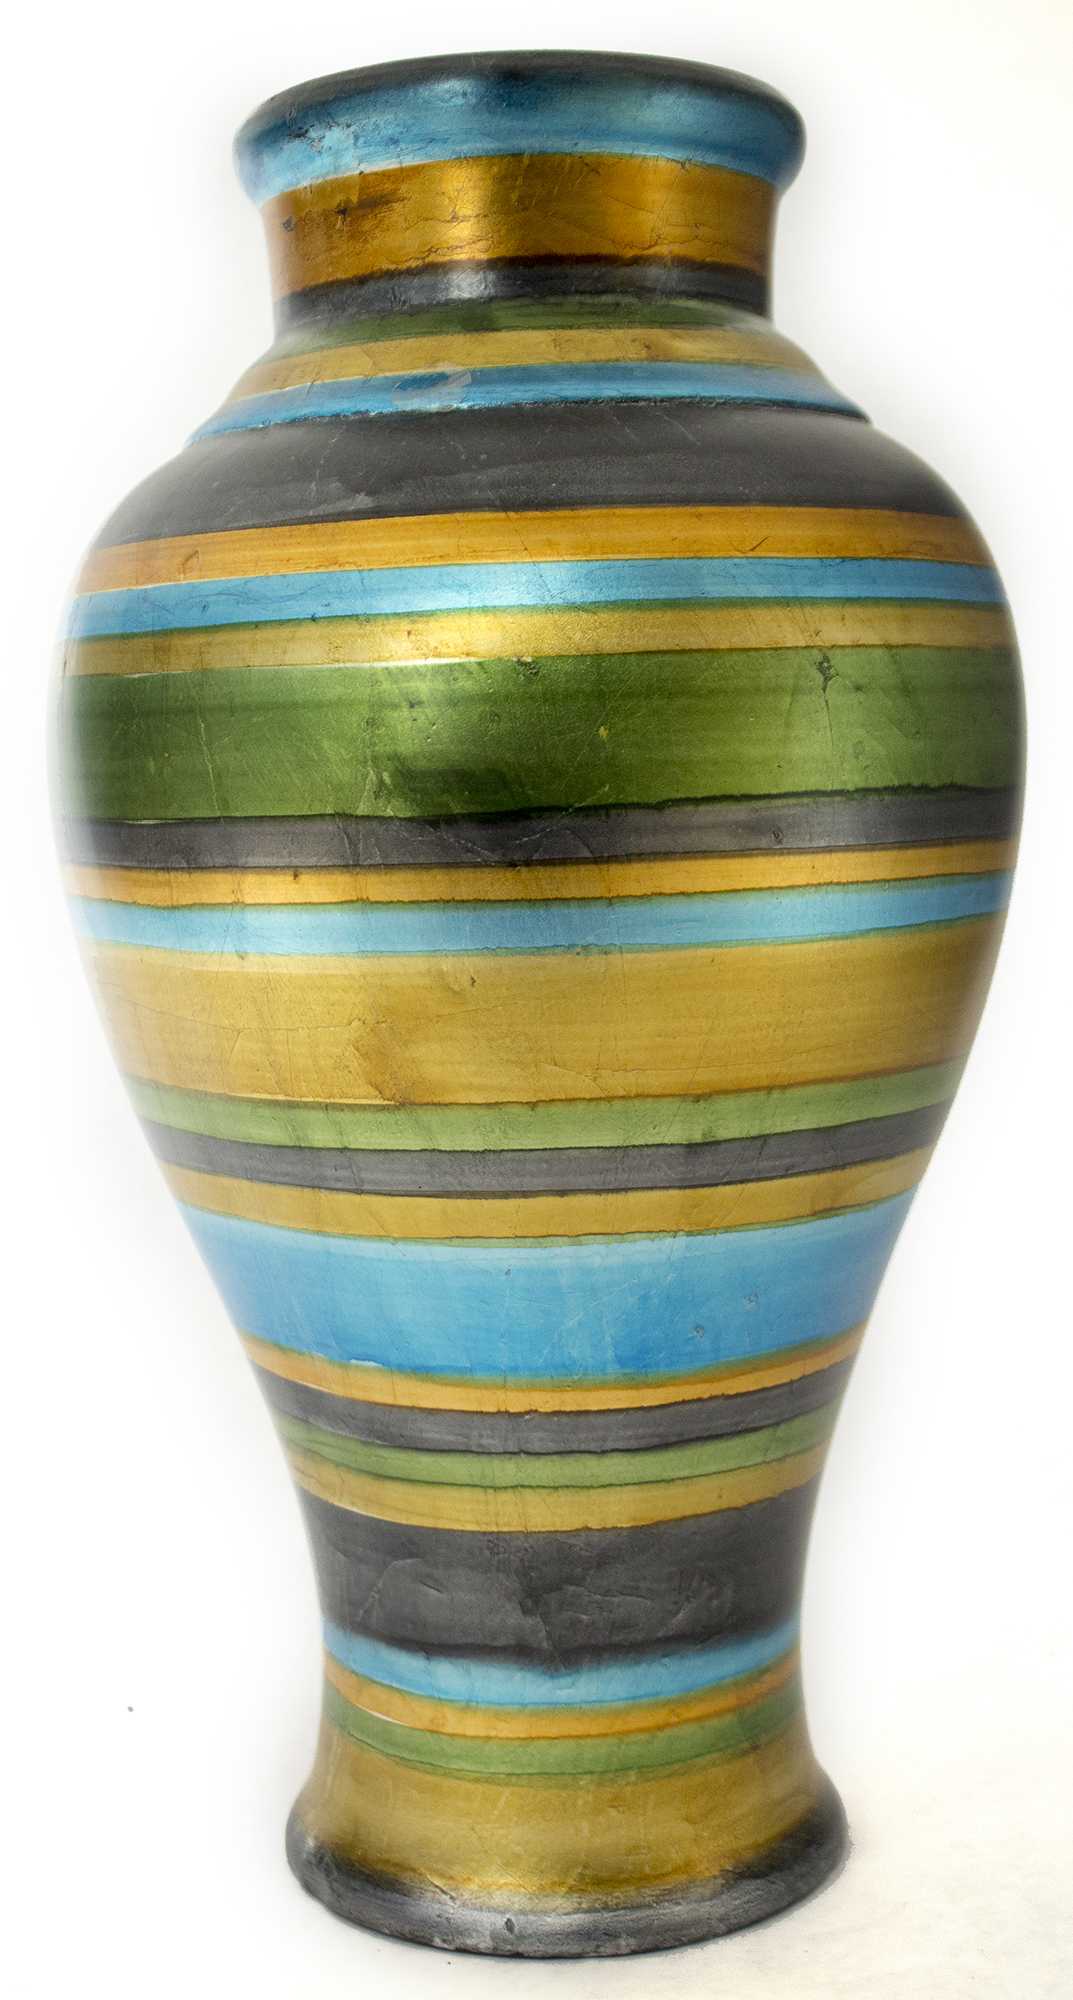 10.75" X 10.75" X 20" Blue Green Gold Copper And Pewter Ceramic Ceramic Amphora Floor Vase Ceramic Satin